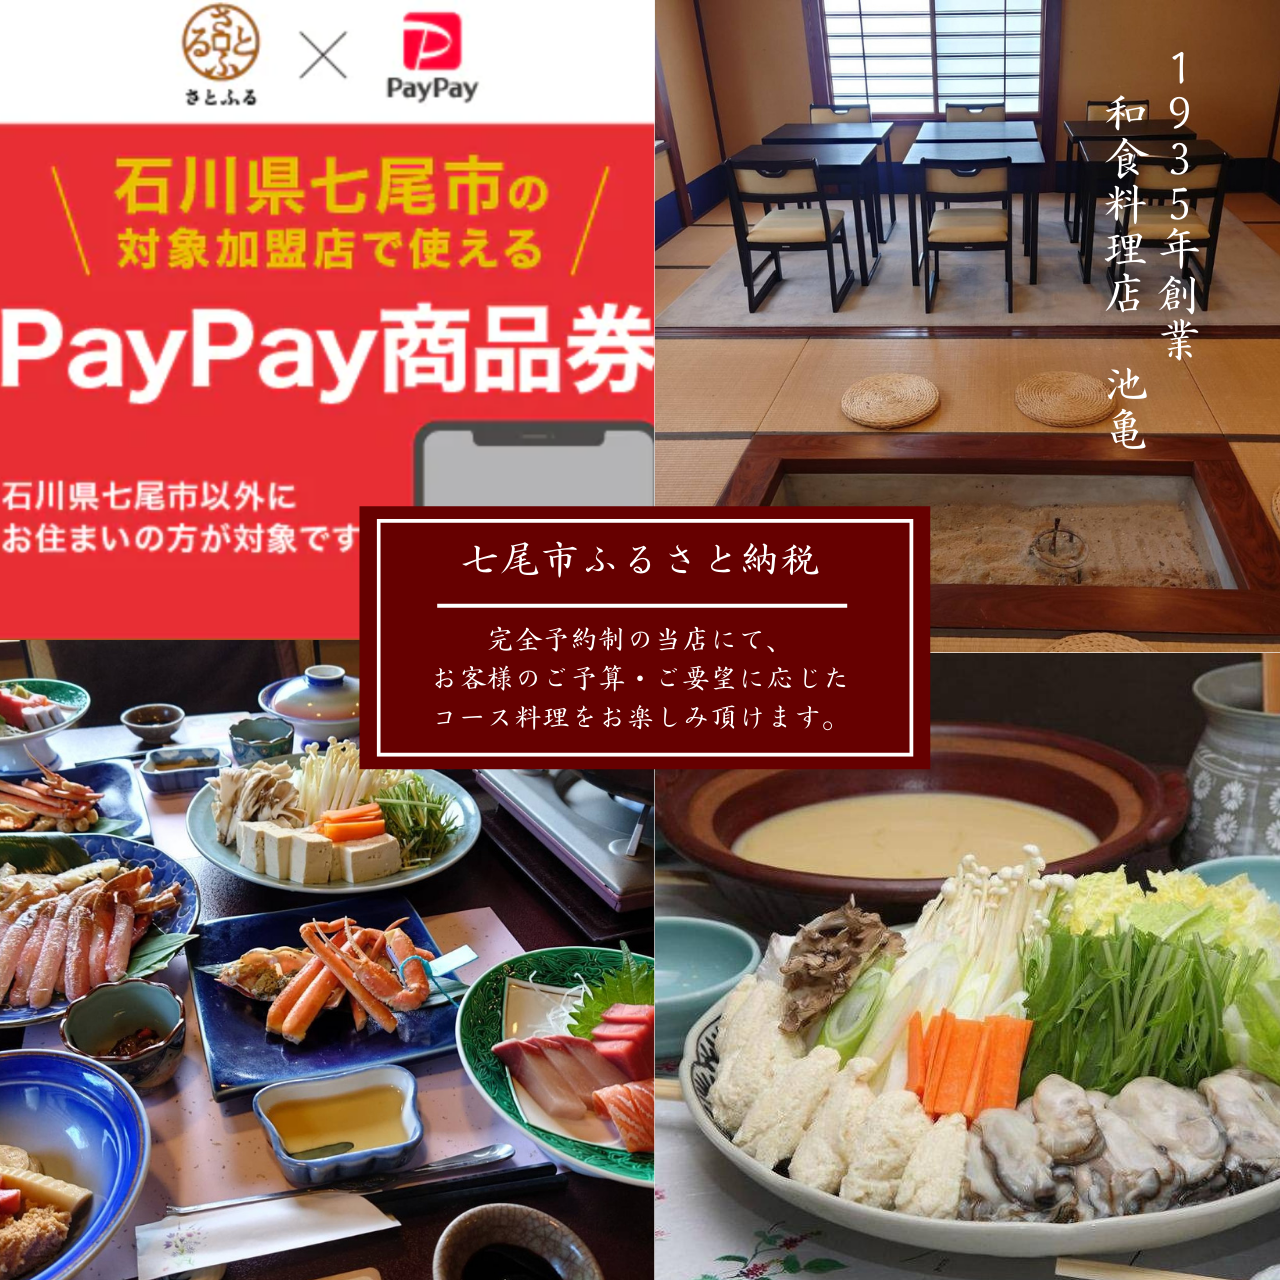 【店舗情報】/七尾市ふるさと納税『PayPay商品券』は当店でもご利用頂けます。